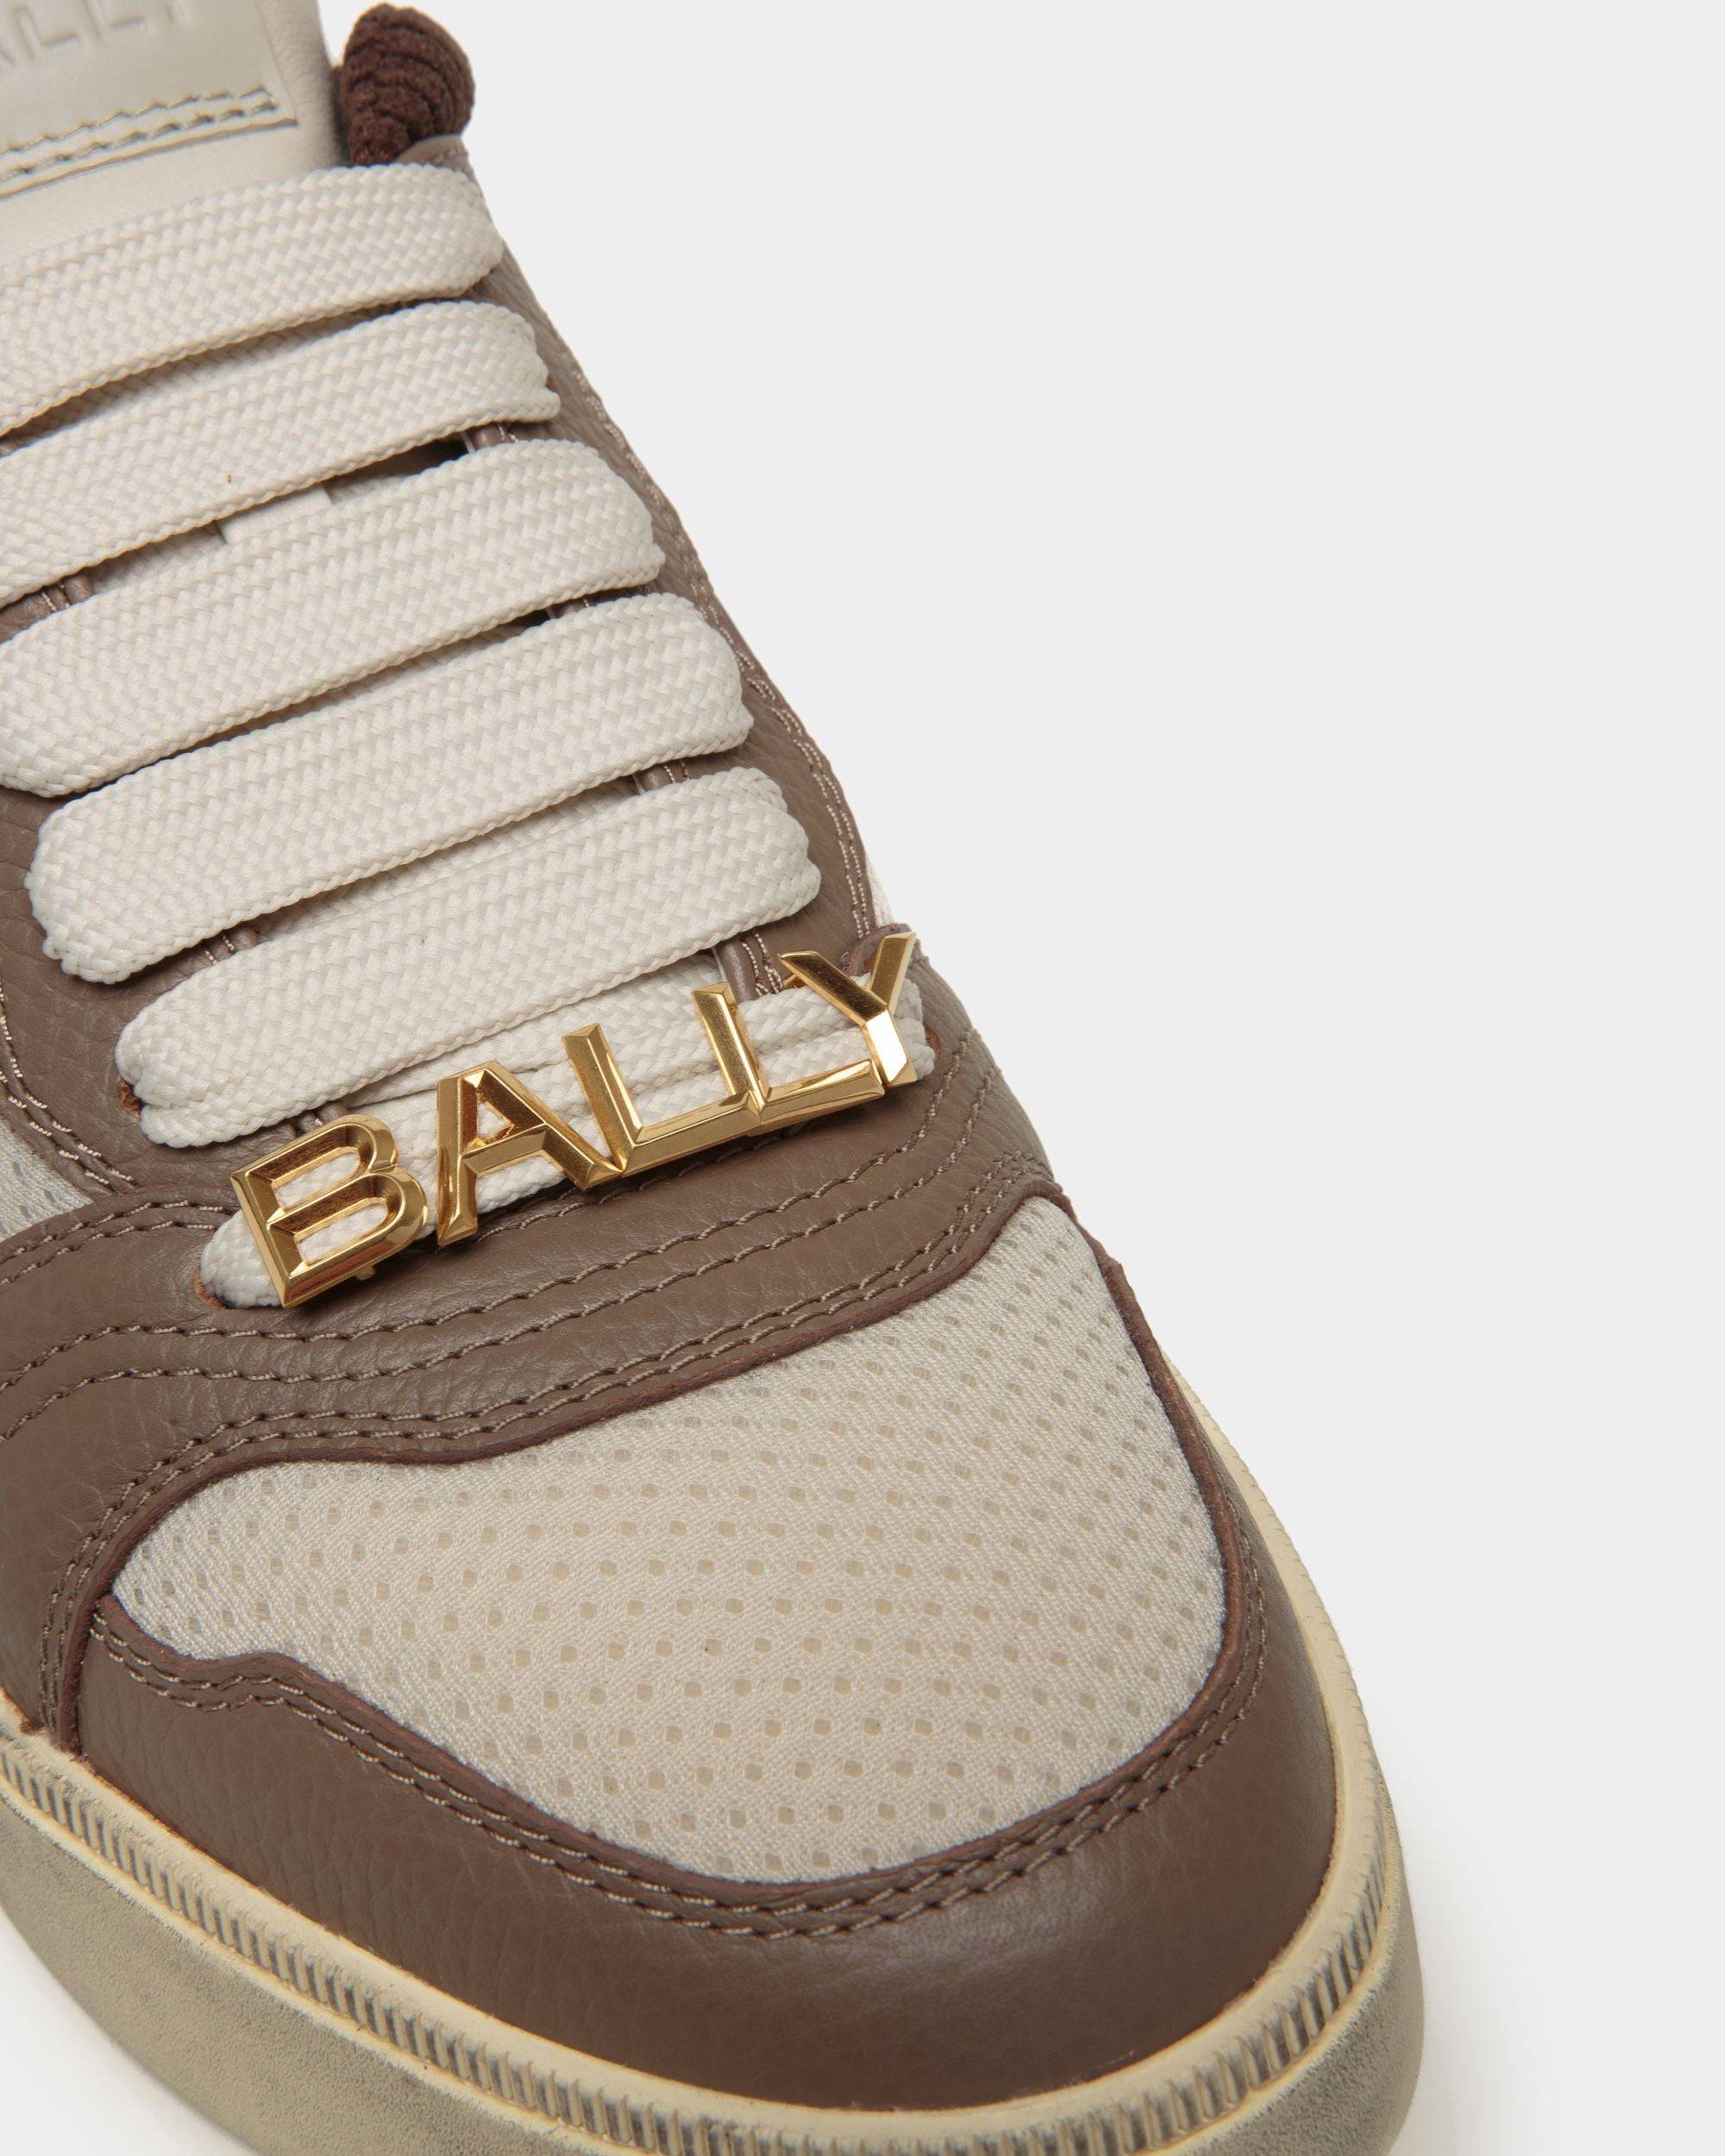 Raise | Sneaker für Herren aus mehrfarbigem Nylon | Bally | Still Life Detail